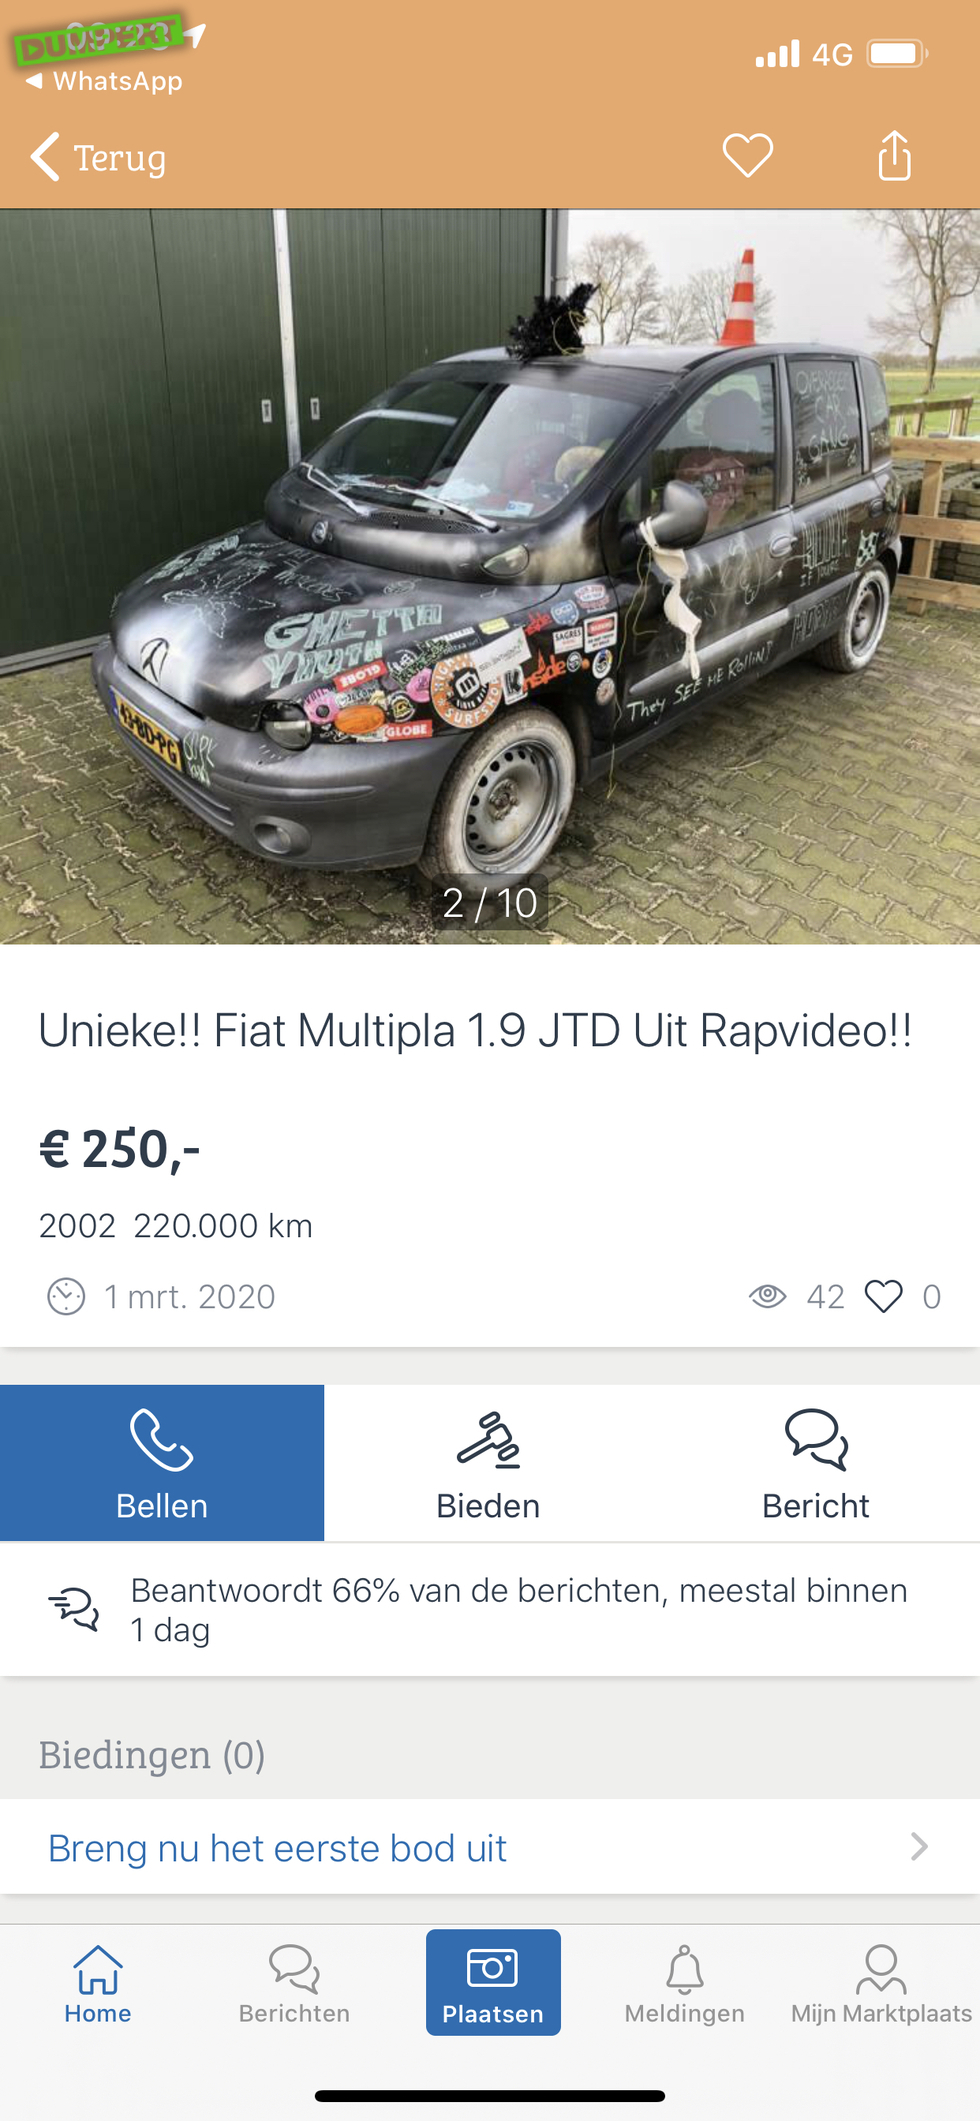 Unieke Fiat Multipla uit rapvideo